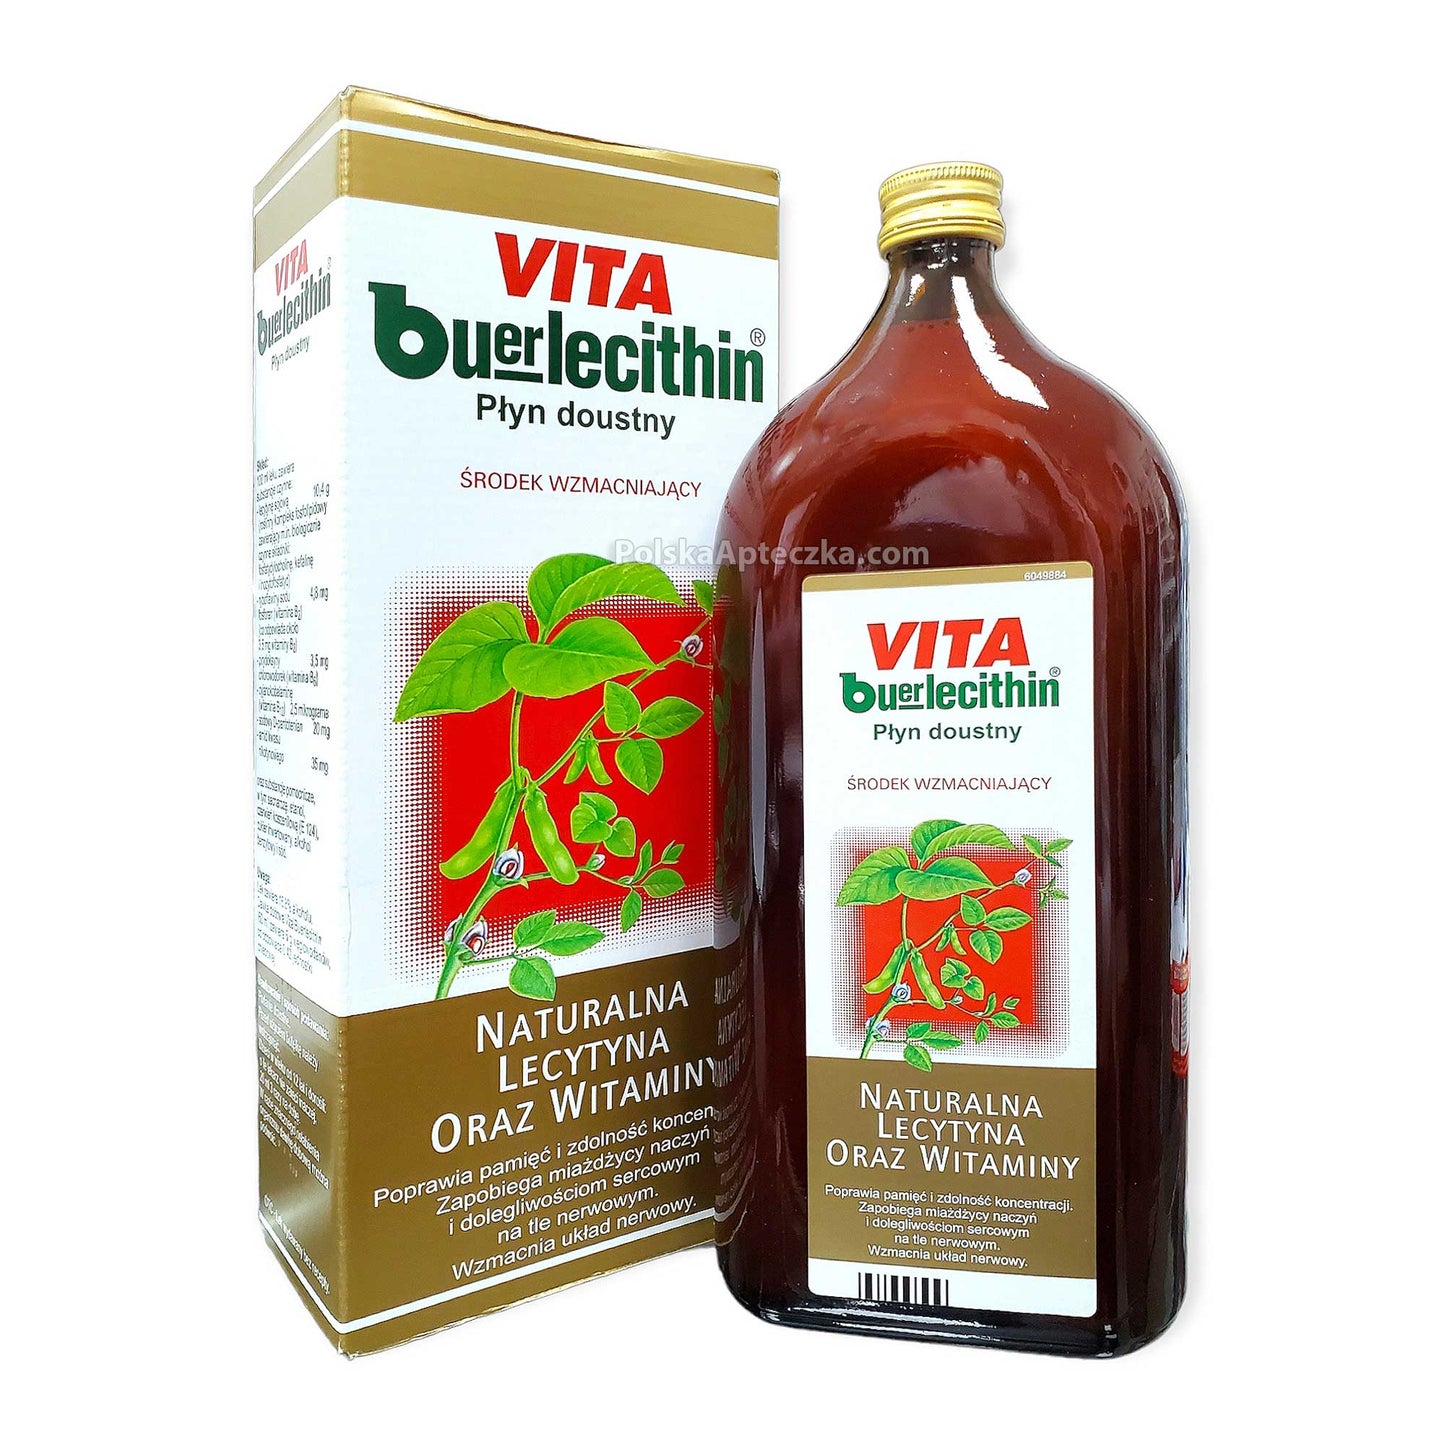 Vita Buerlecithin 1L Naturalna Lecytyna oraz witaminy